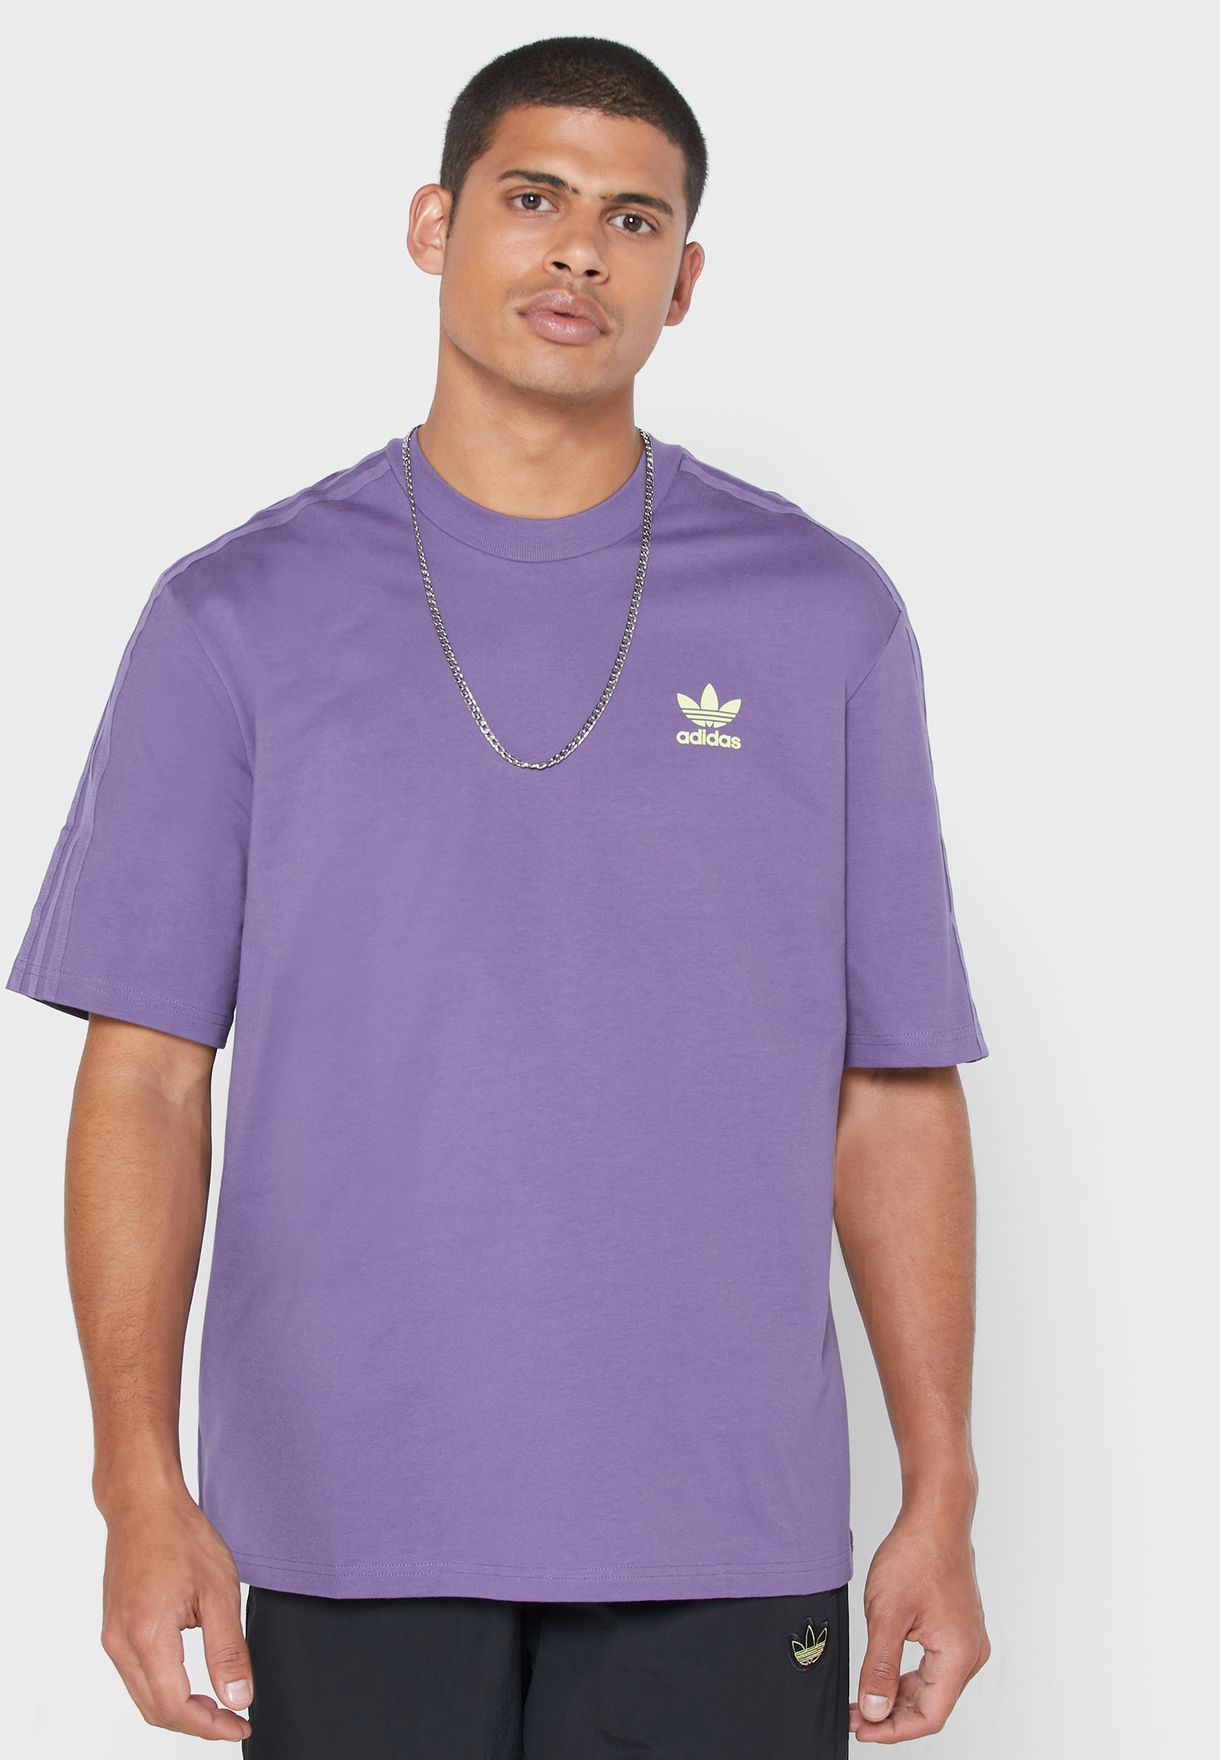 adidas lavender shirt